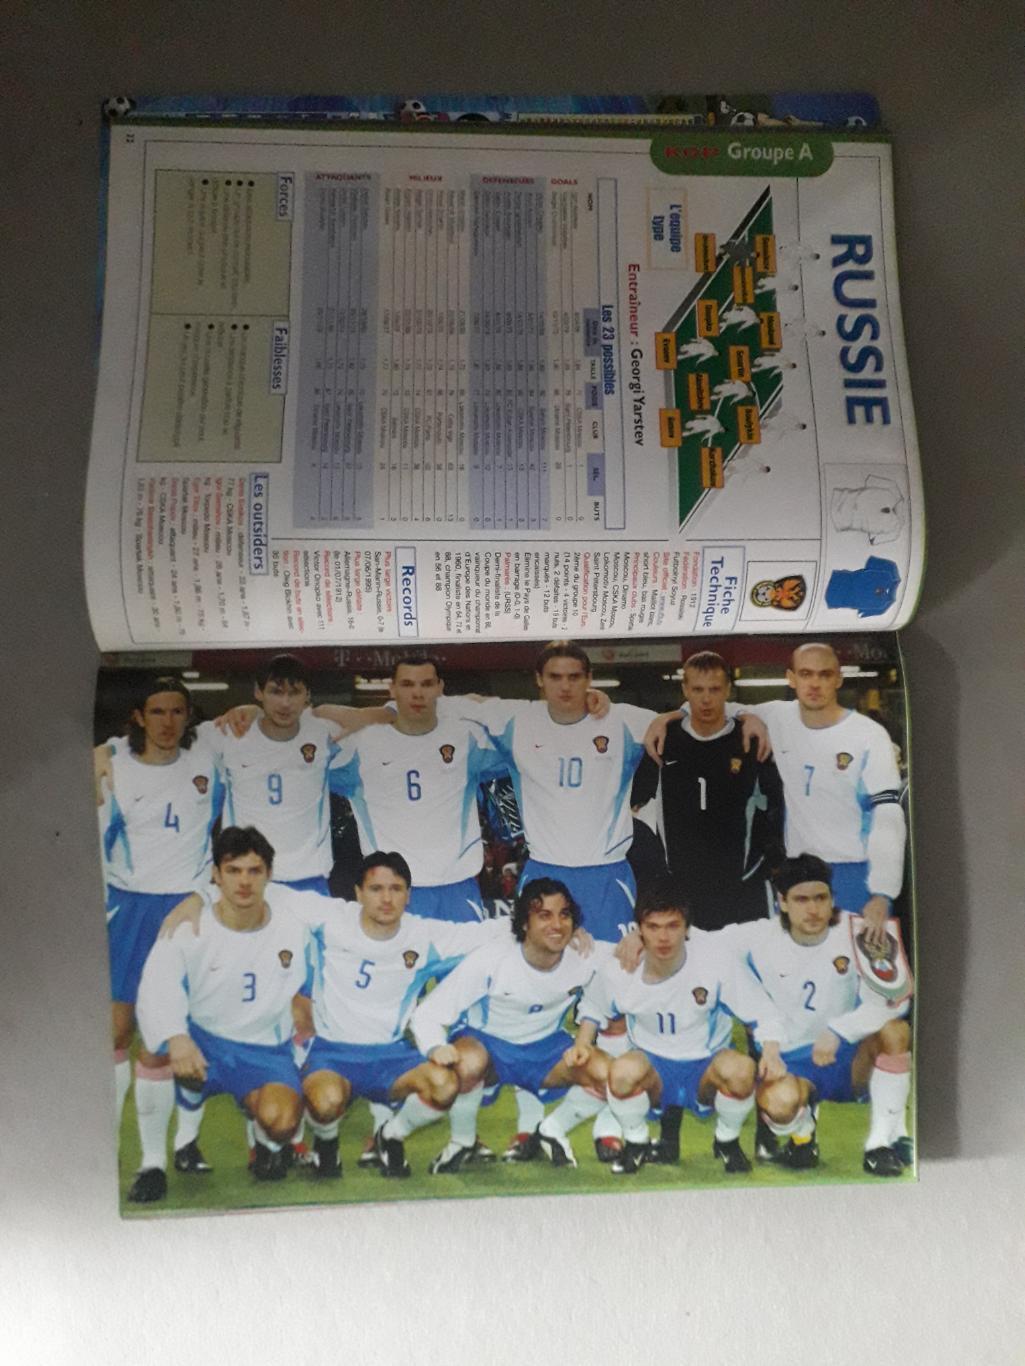 Kop Football- EURO 2004 4